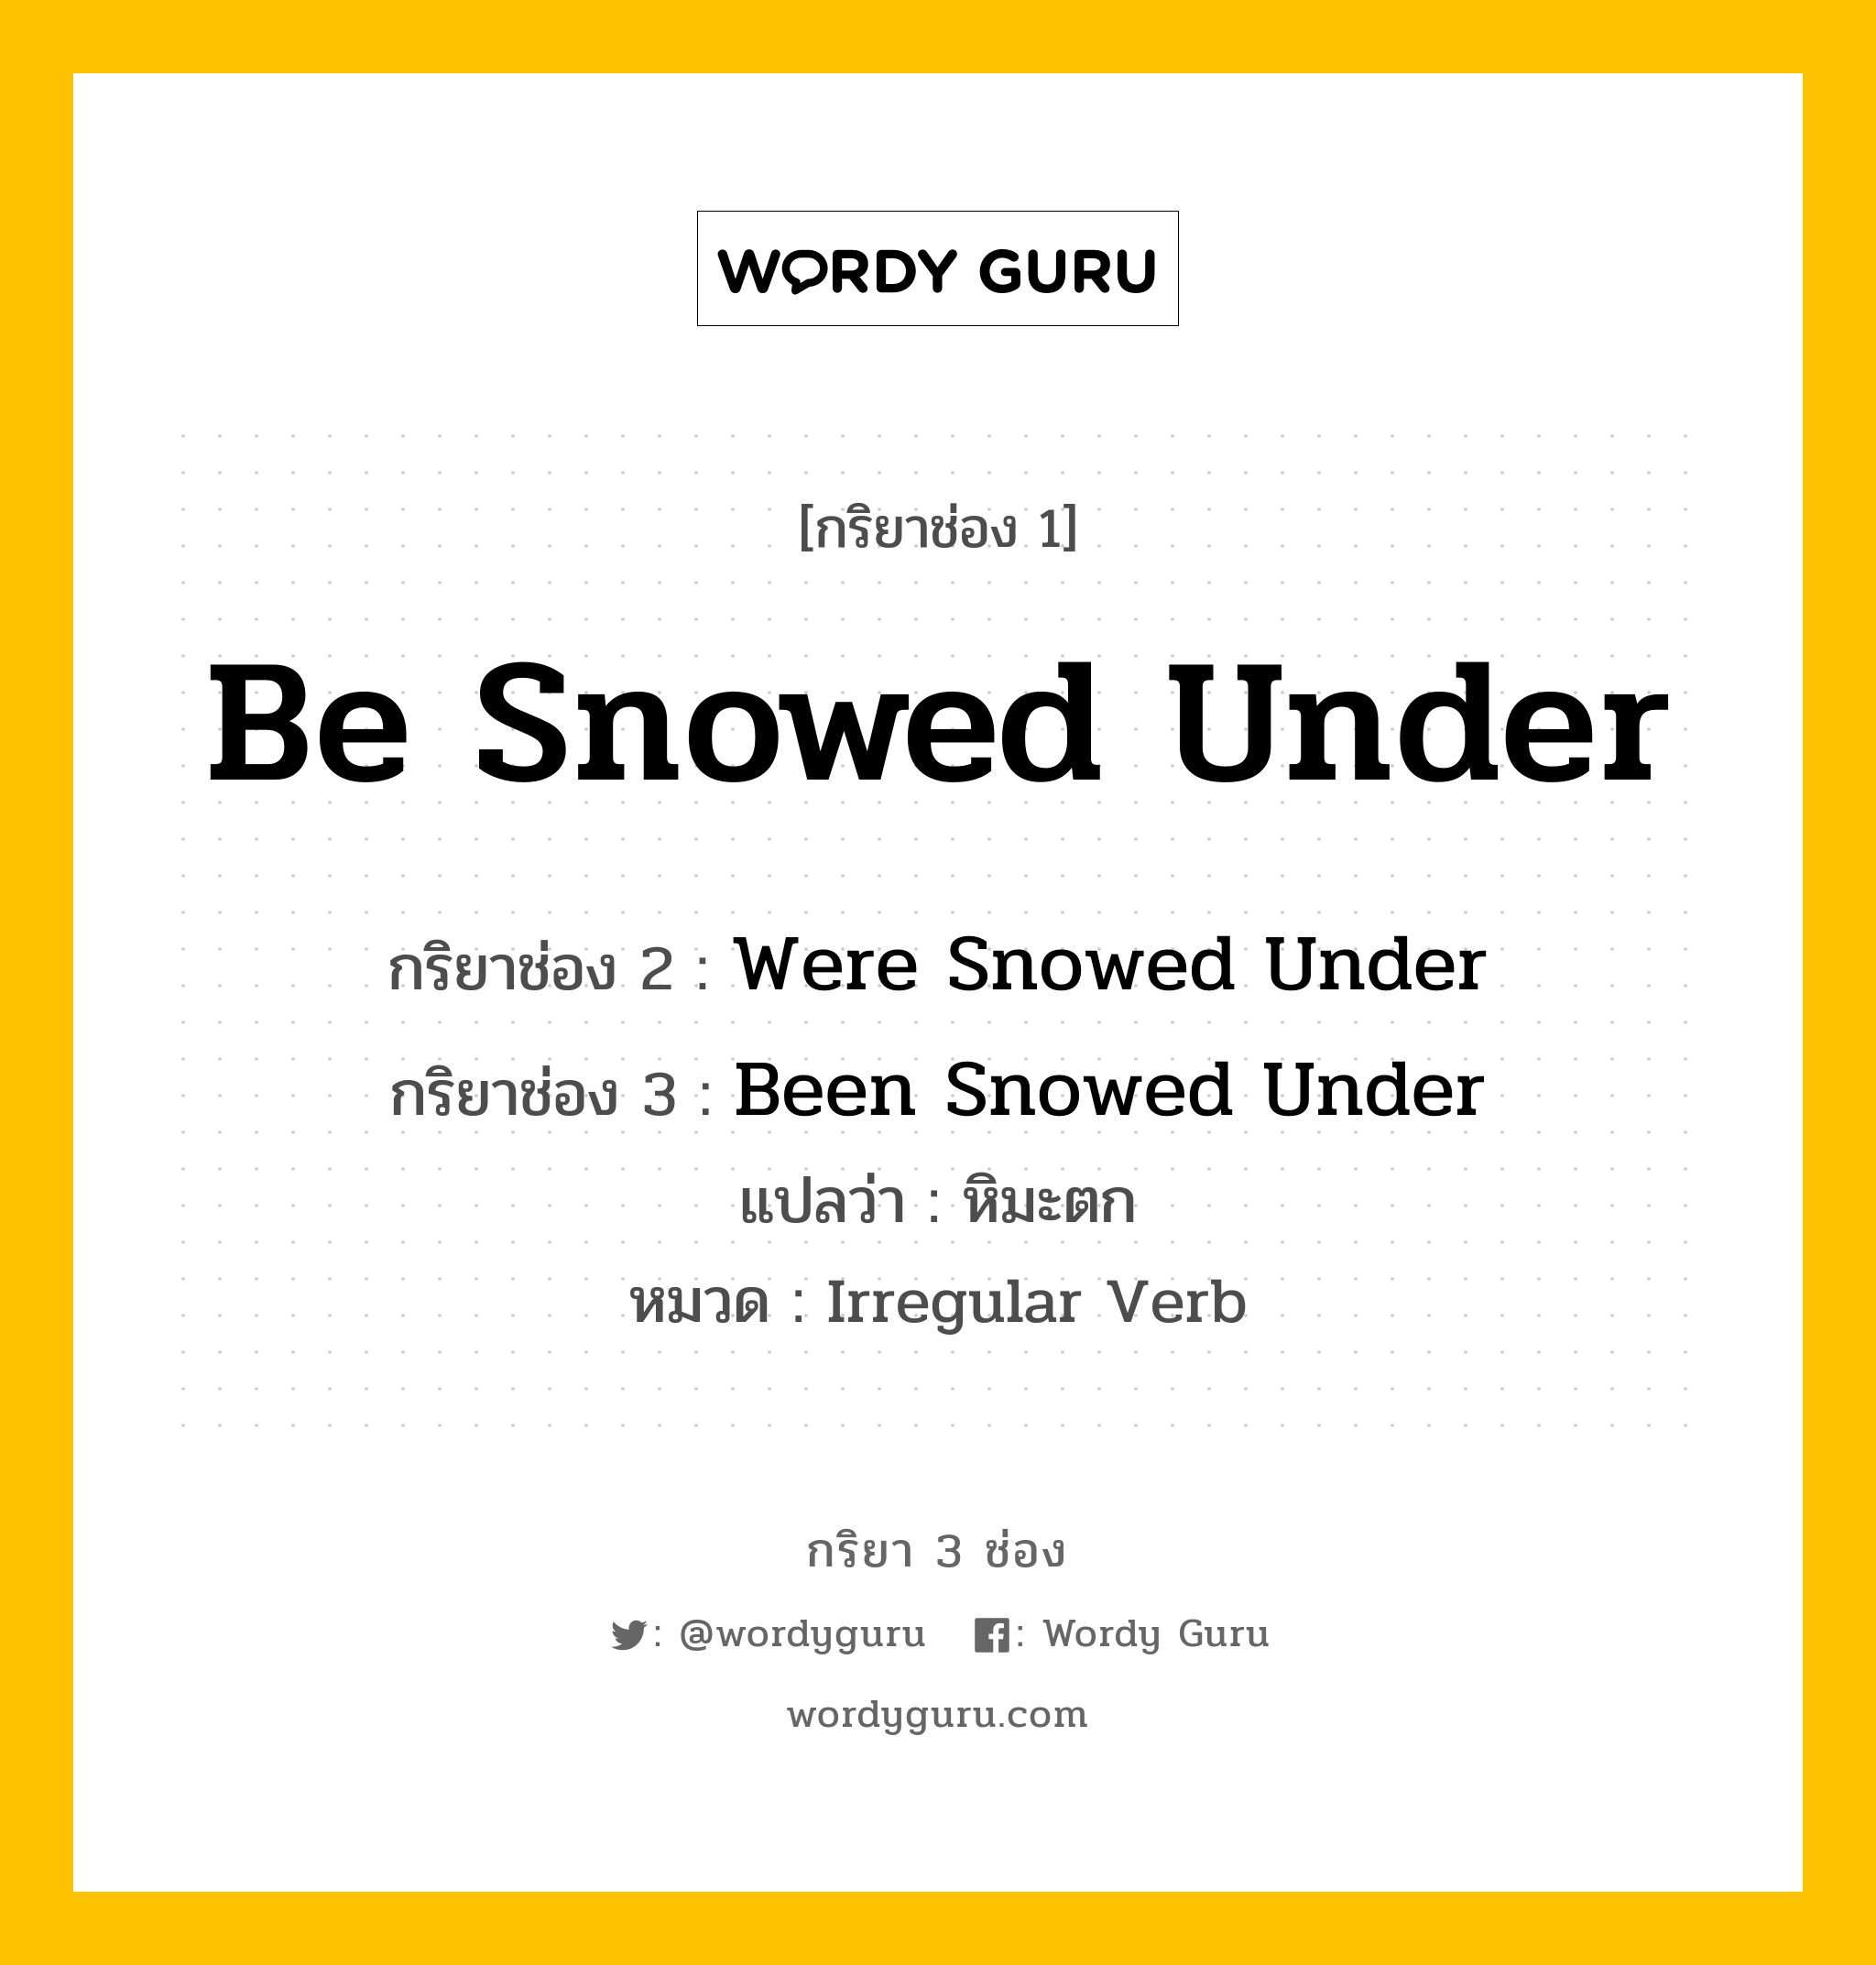 กริยา 3 ช่อง ของ Be Snowed Under คืออะไร?, กริยาช่อง 1 Be Snowed Under กริยาช่อง 2 Were Snowed Under กริยาช่อง 3 Been Snowed Under แปลว่า หิมะตก หมวด Irregular Verb หมวด Irregular Verb